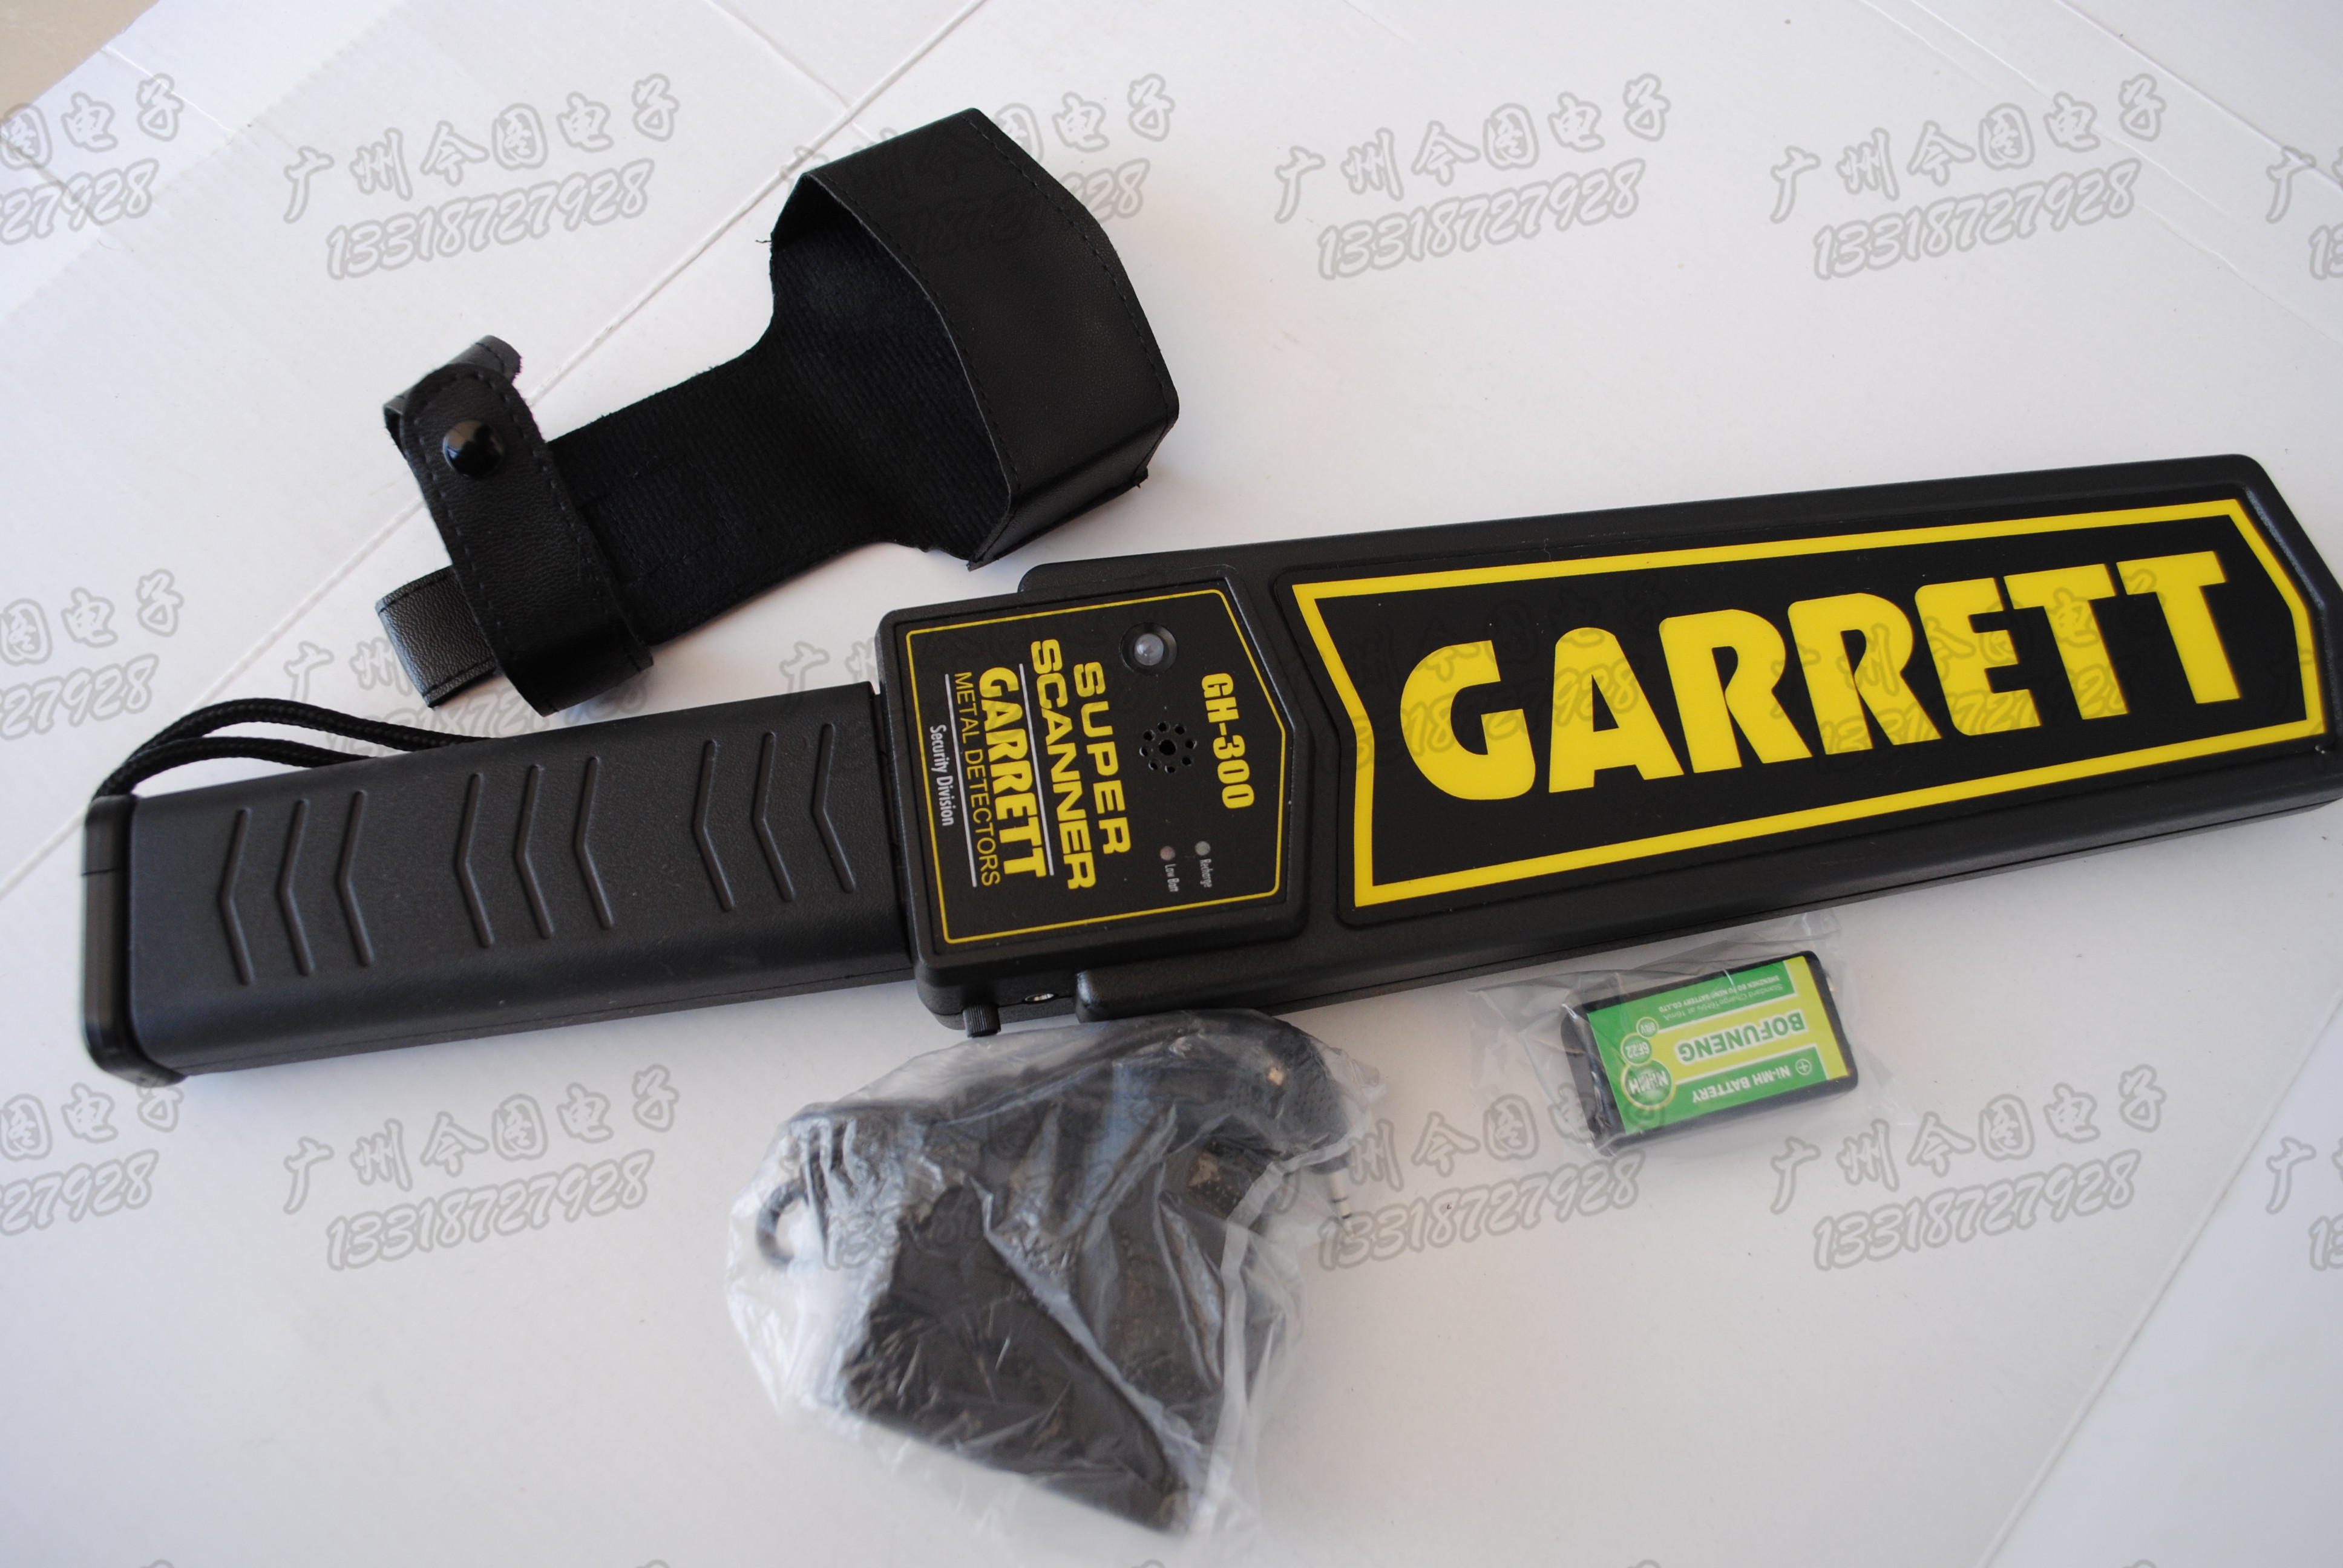 供应进口手持金属探测器盖瑞特GARRETT进口金属探测器盖瑞特探测器